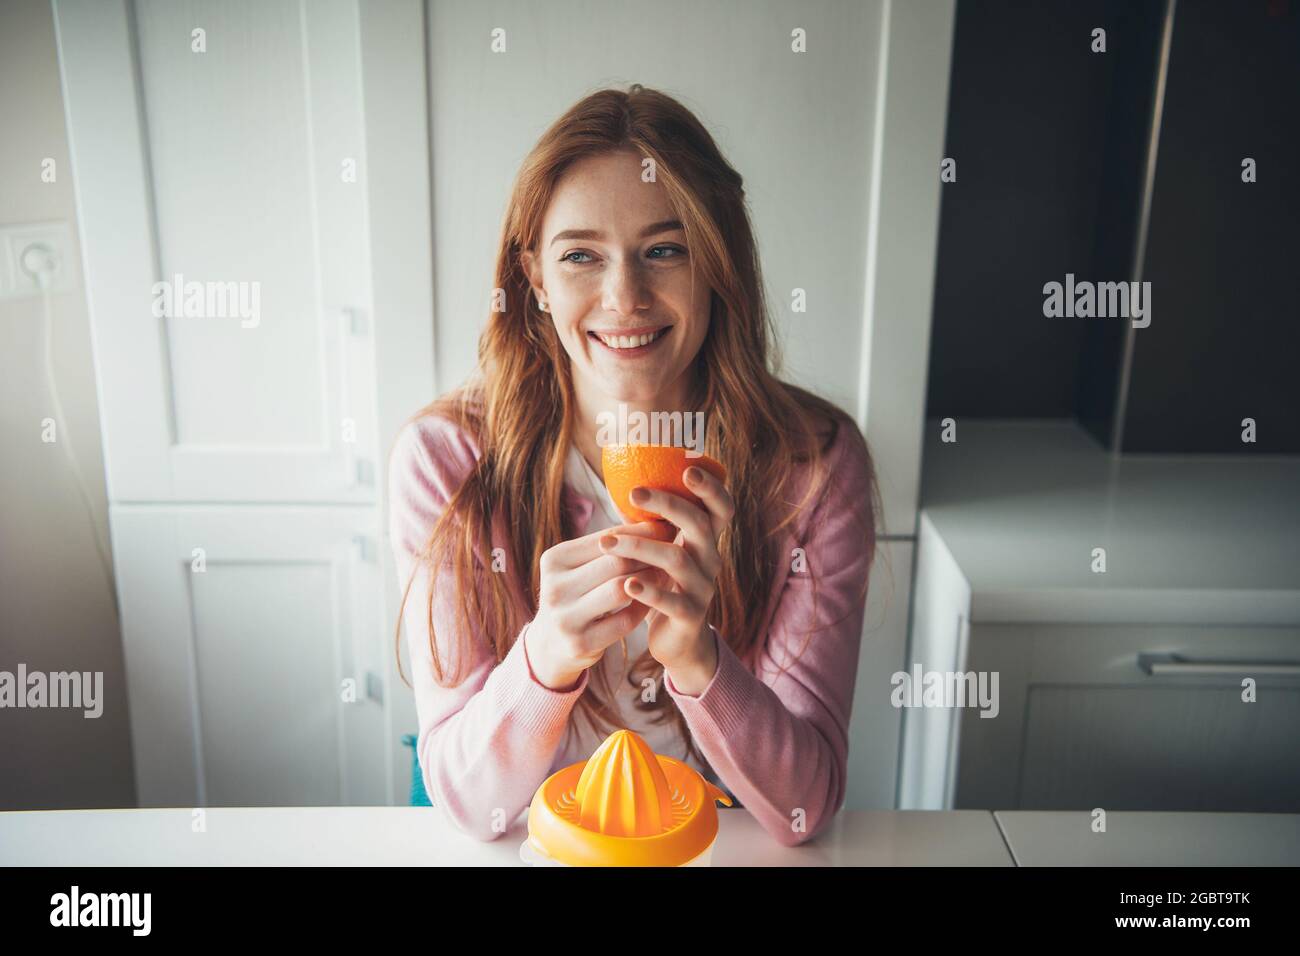 Ginger Woman avec des taches de rousseur sourit tout en tenant une tranche d'orange tout en comprimant le jus de fruit Banque D'Images